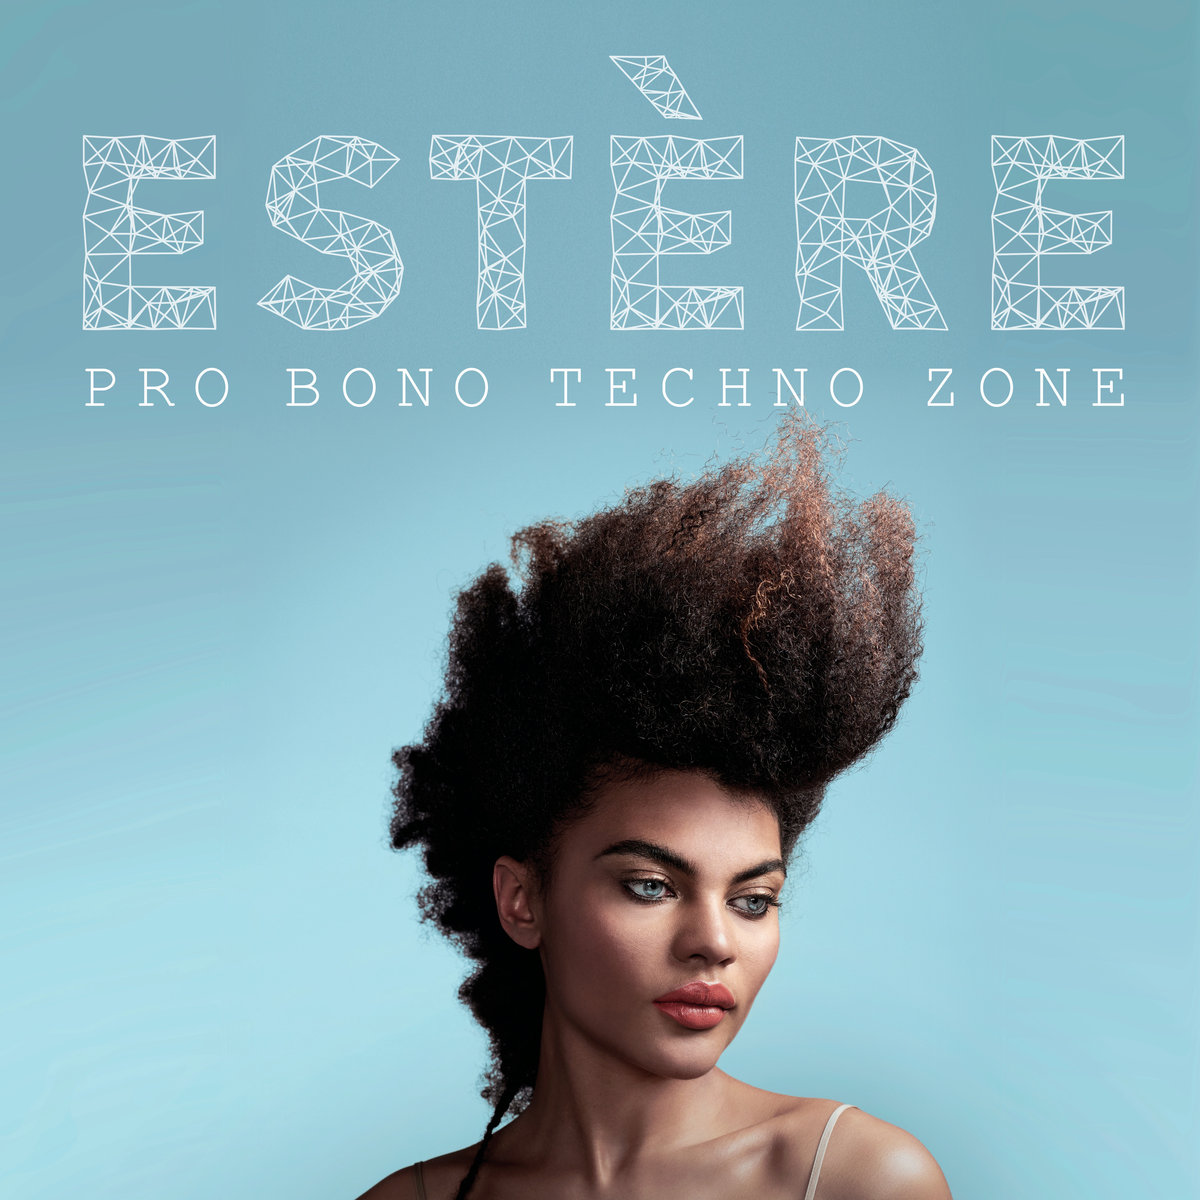 Pro Bono Techno Zone